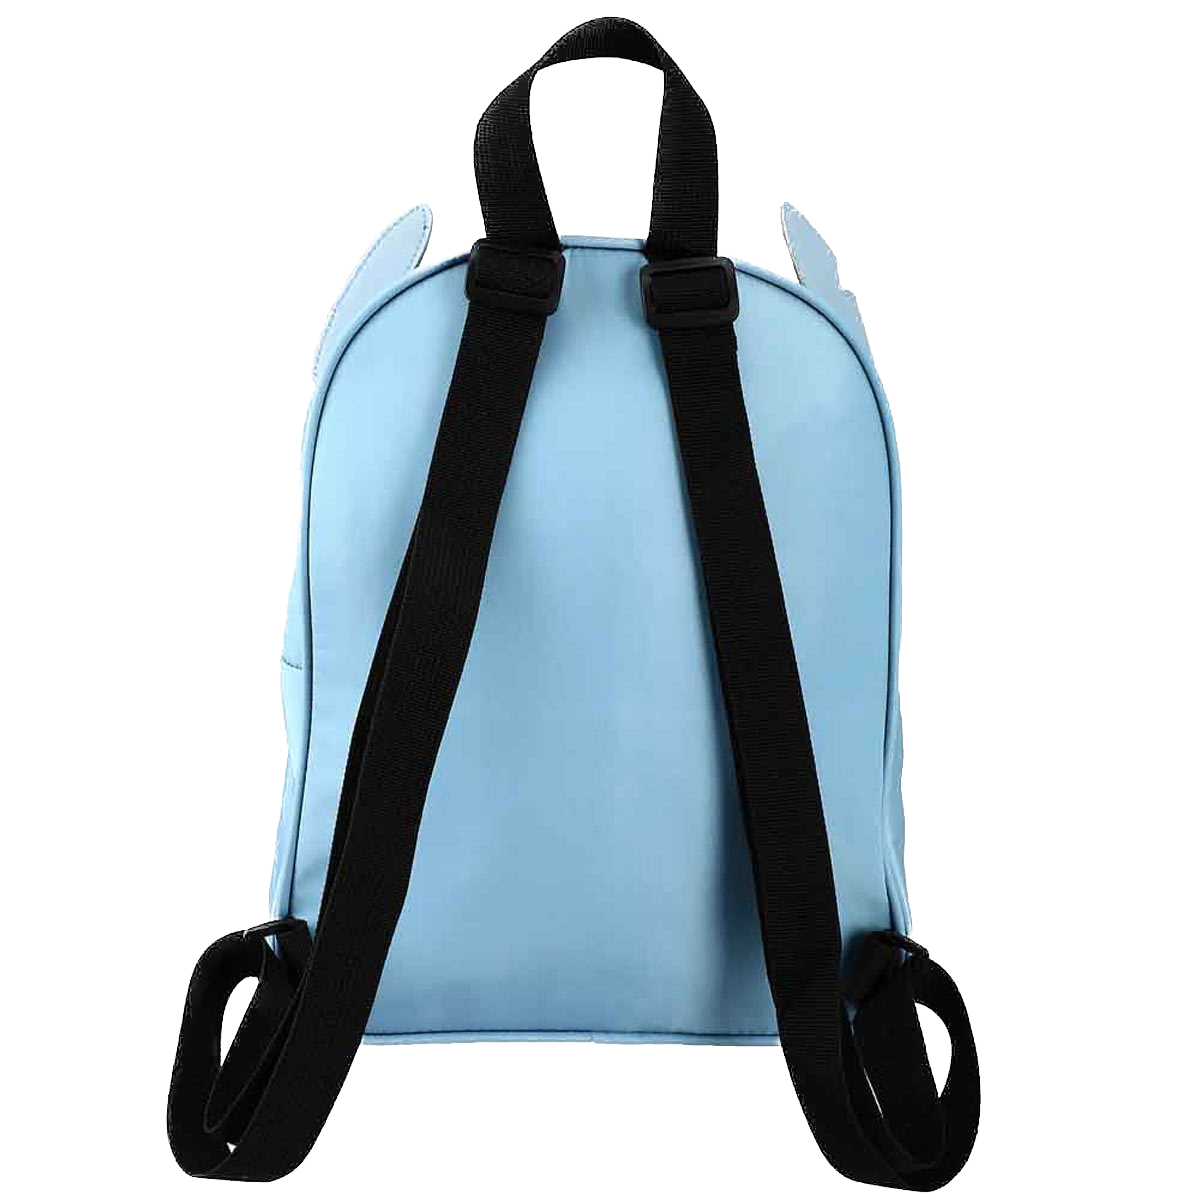 Lilo & Stitch - Stitch Face Mini-Backpack